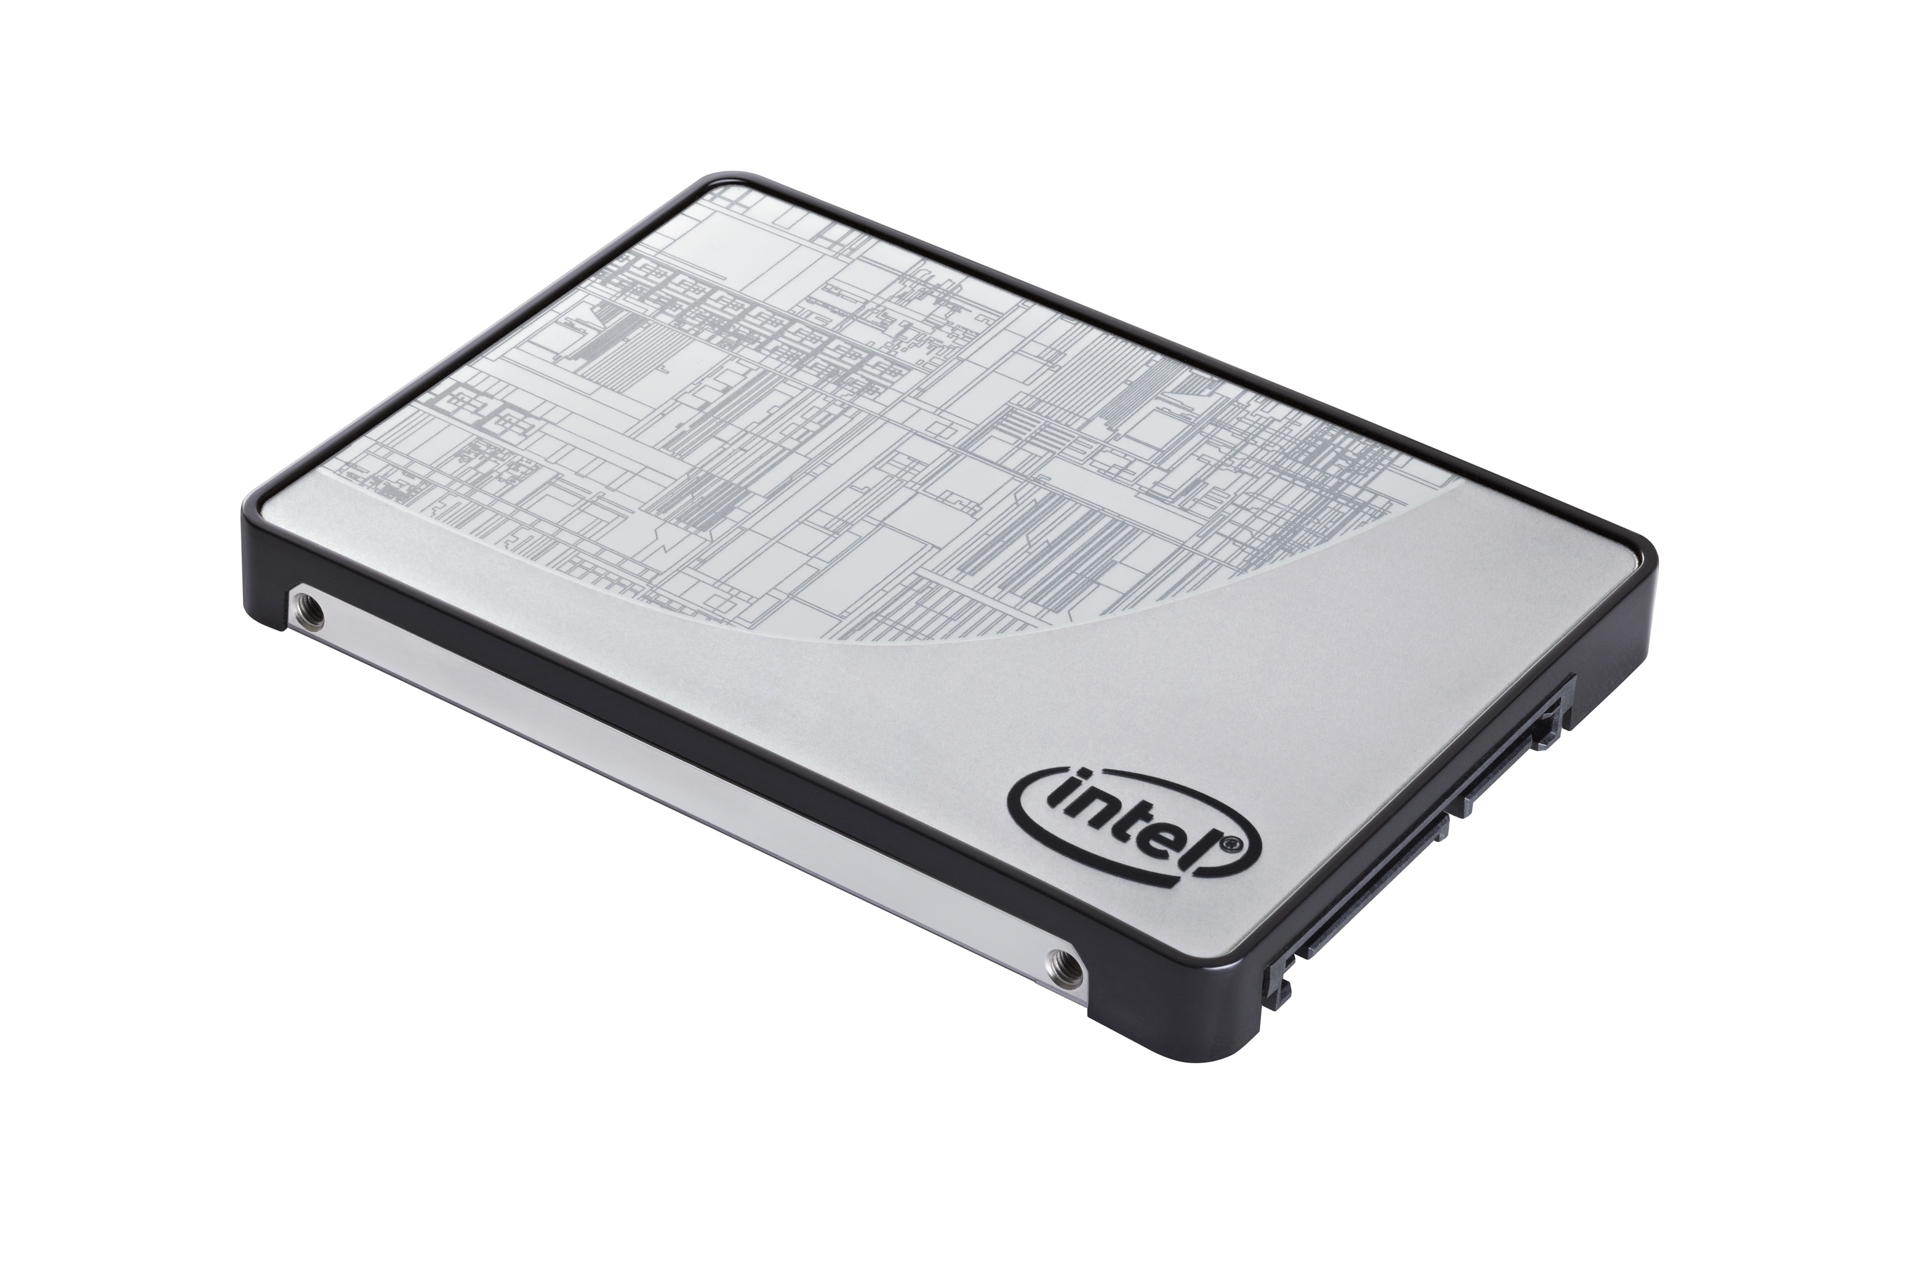 Immagine pubblicata in relazione al seguente contenuto: Intel introduce un nuovo drive SSD 335 con capacit pari a 80GB | Nome immagine: news19420_Intel-SSD-335-80GB_1.jpg